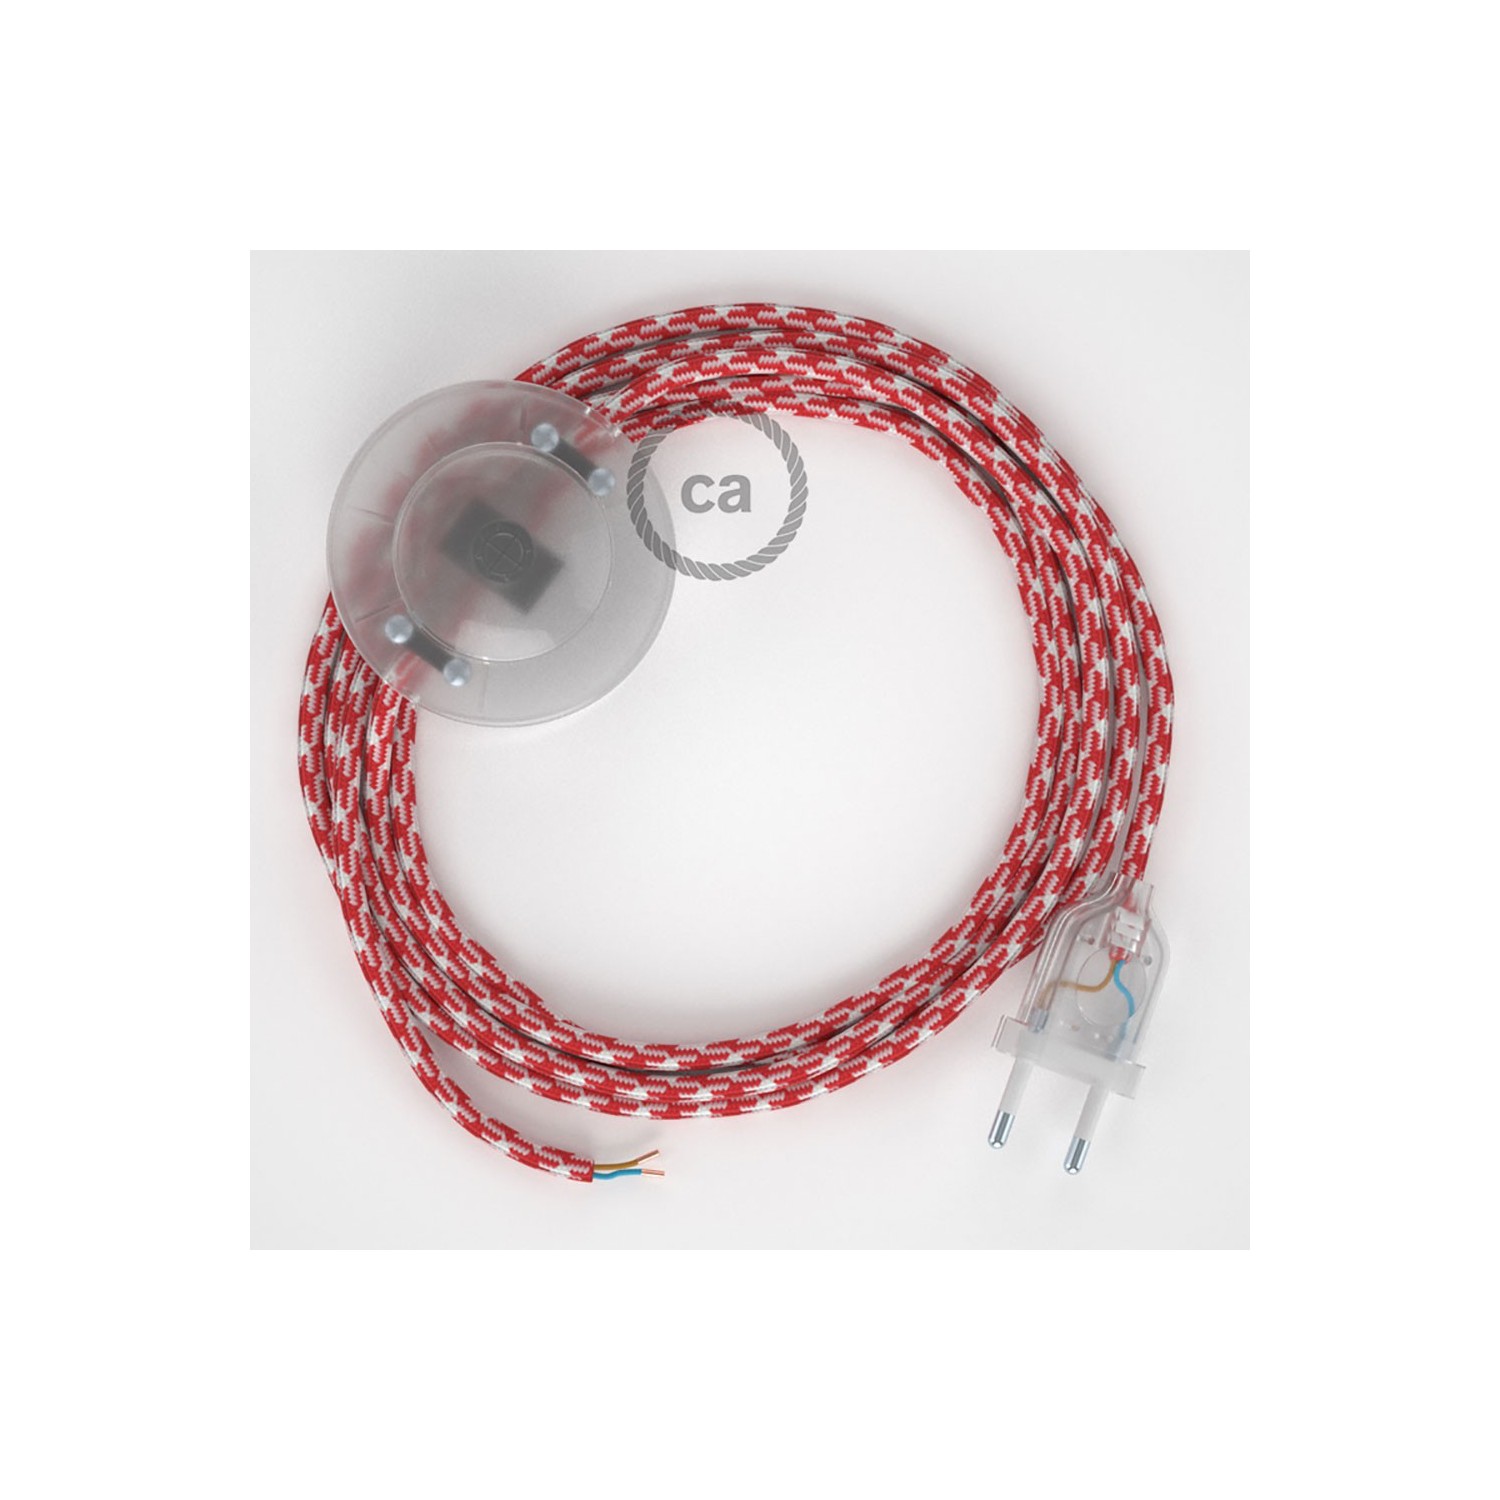 Cordon pour lampadaire, câble RP09 Effet Soie Bicolore Blanc-Rouge 3 m. Choisissez la couleur de la fiche et de l'interrupteur!